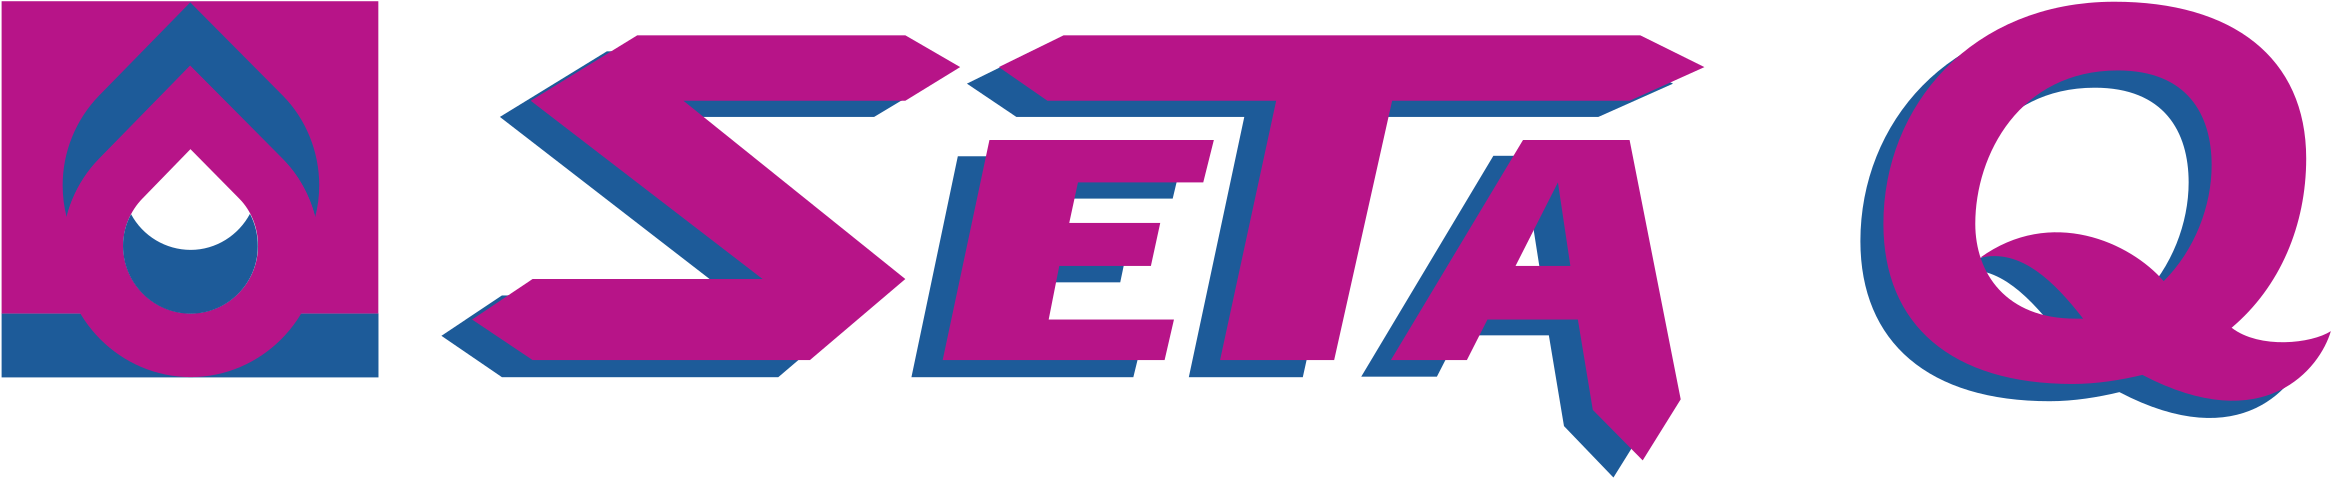 Seta Q Logo Png Transparent - Vector Graphics (2400x2400), Png Download